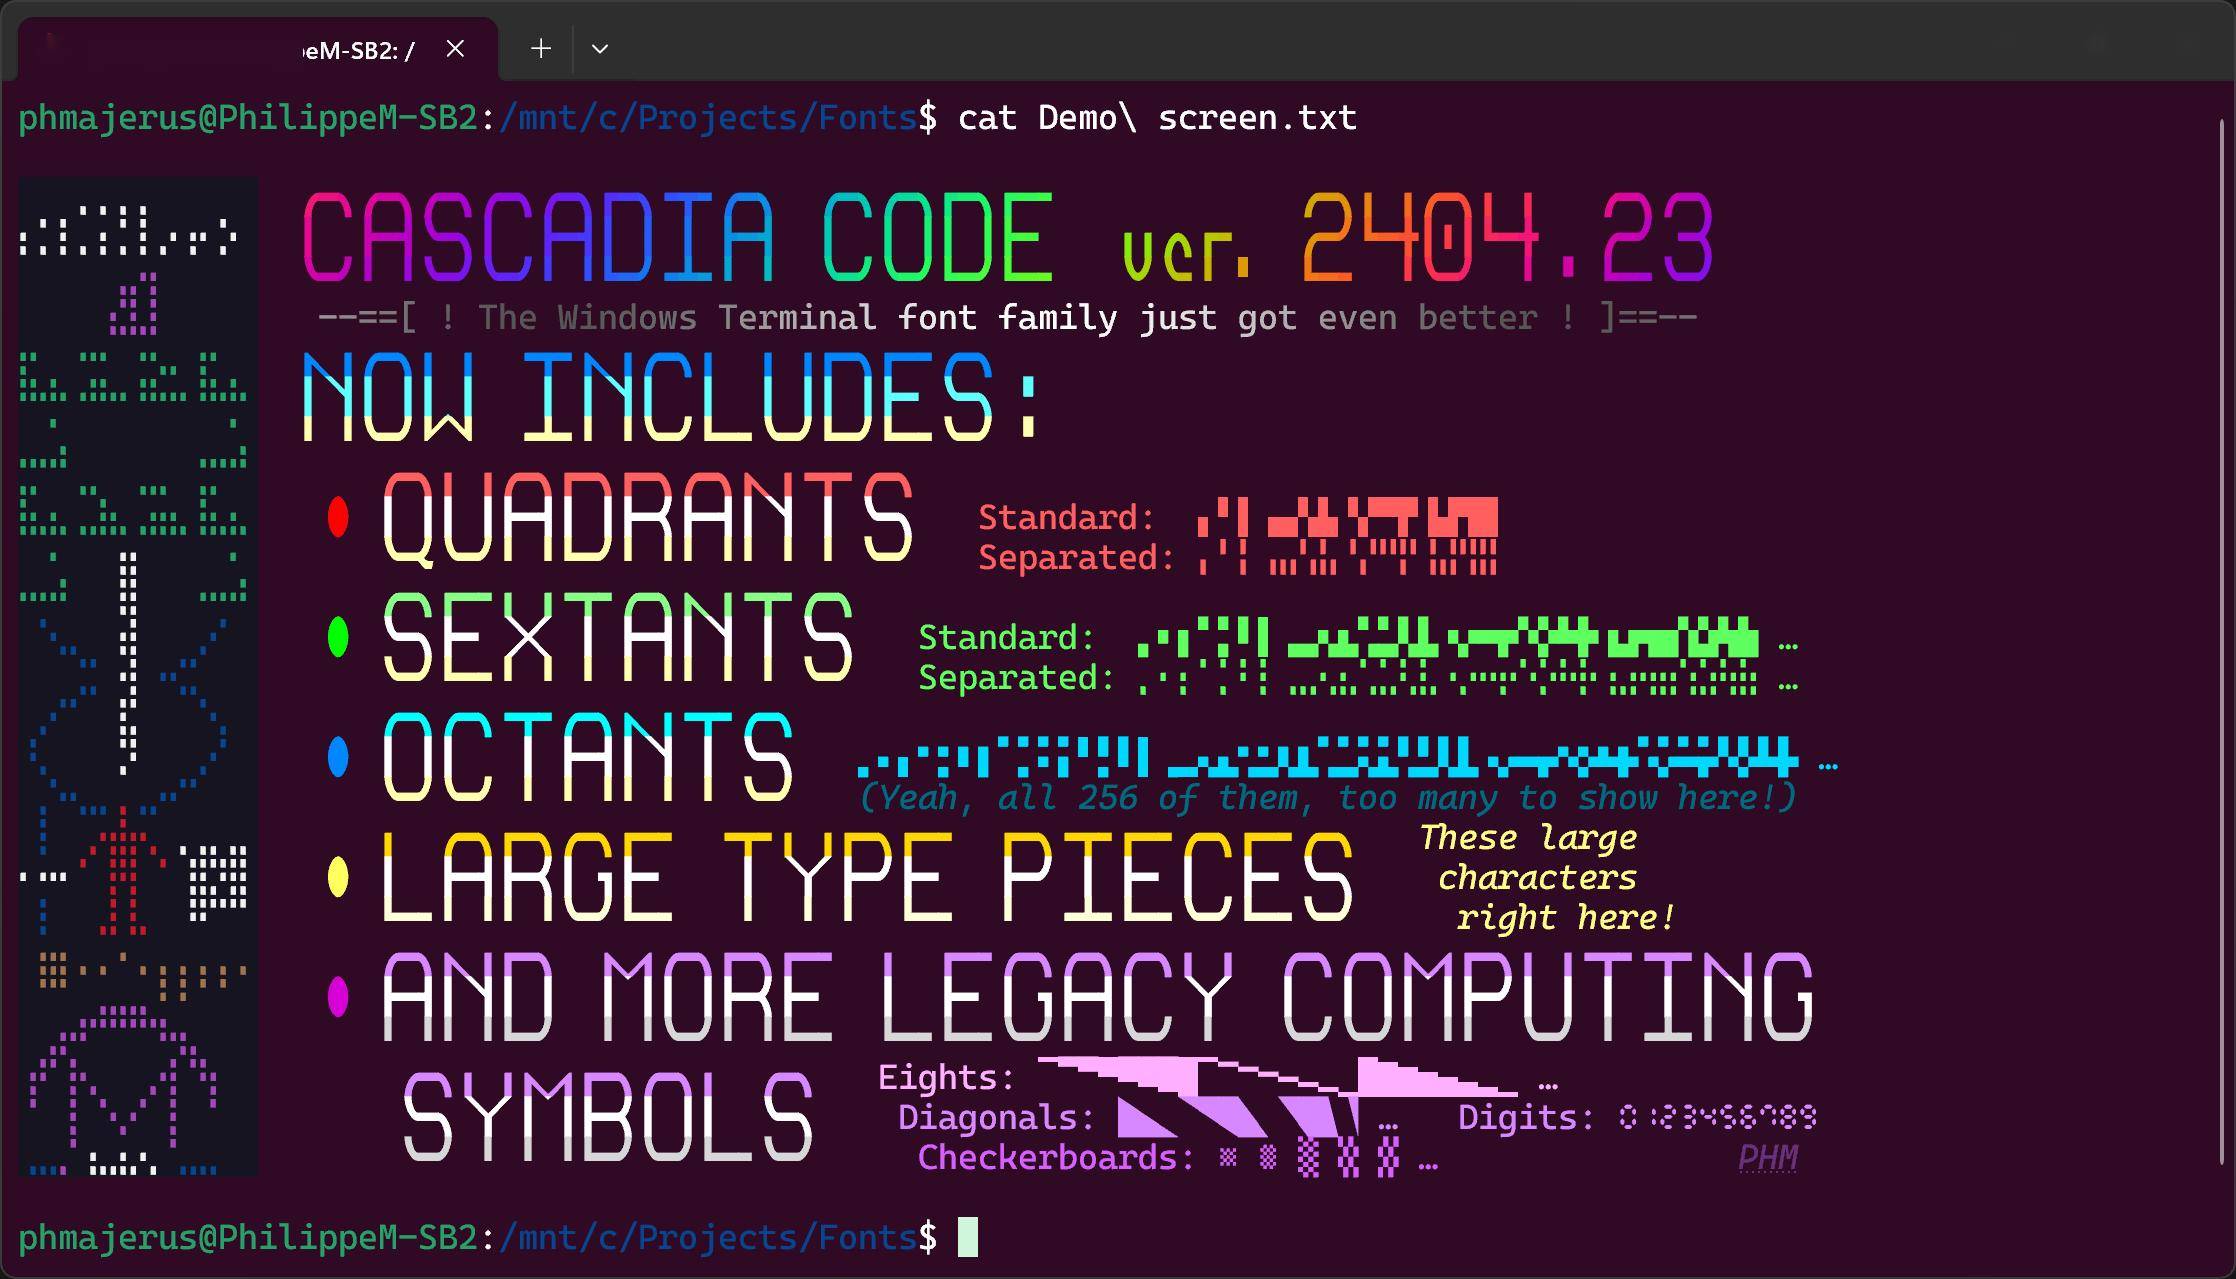 微软开源字体Cascadia Code获2404.23版本更新 添加对象限等